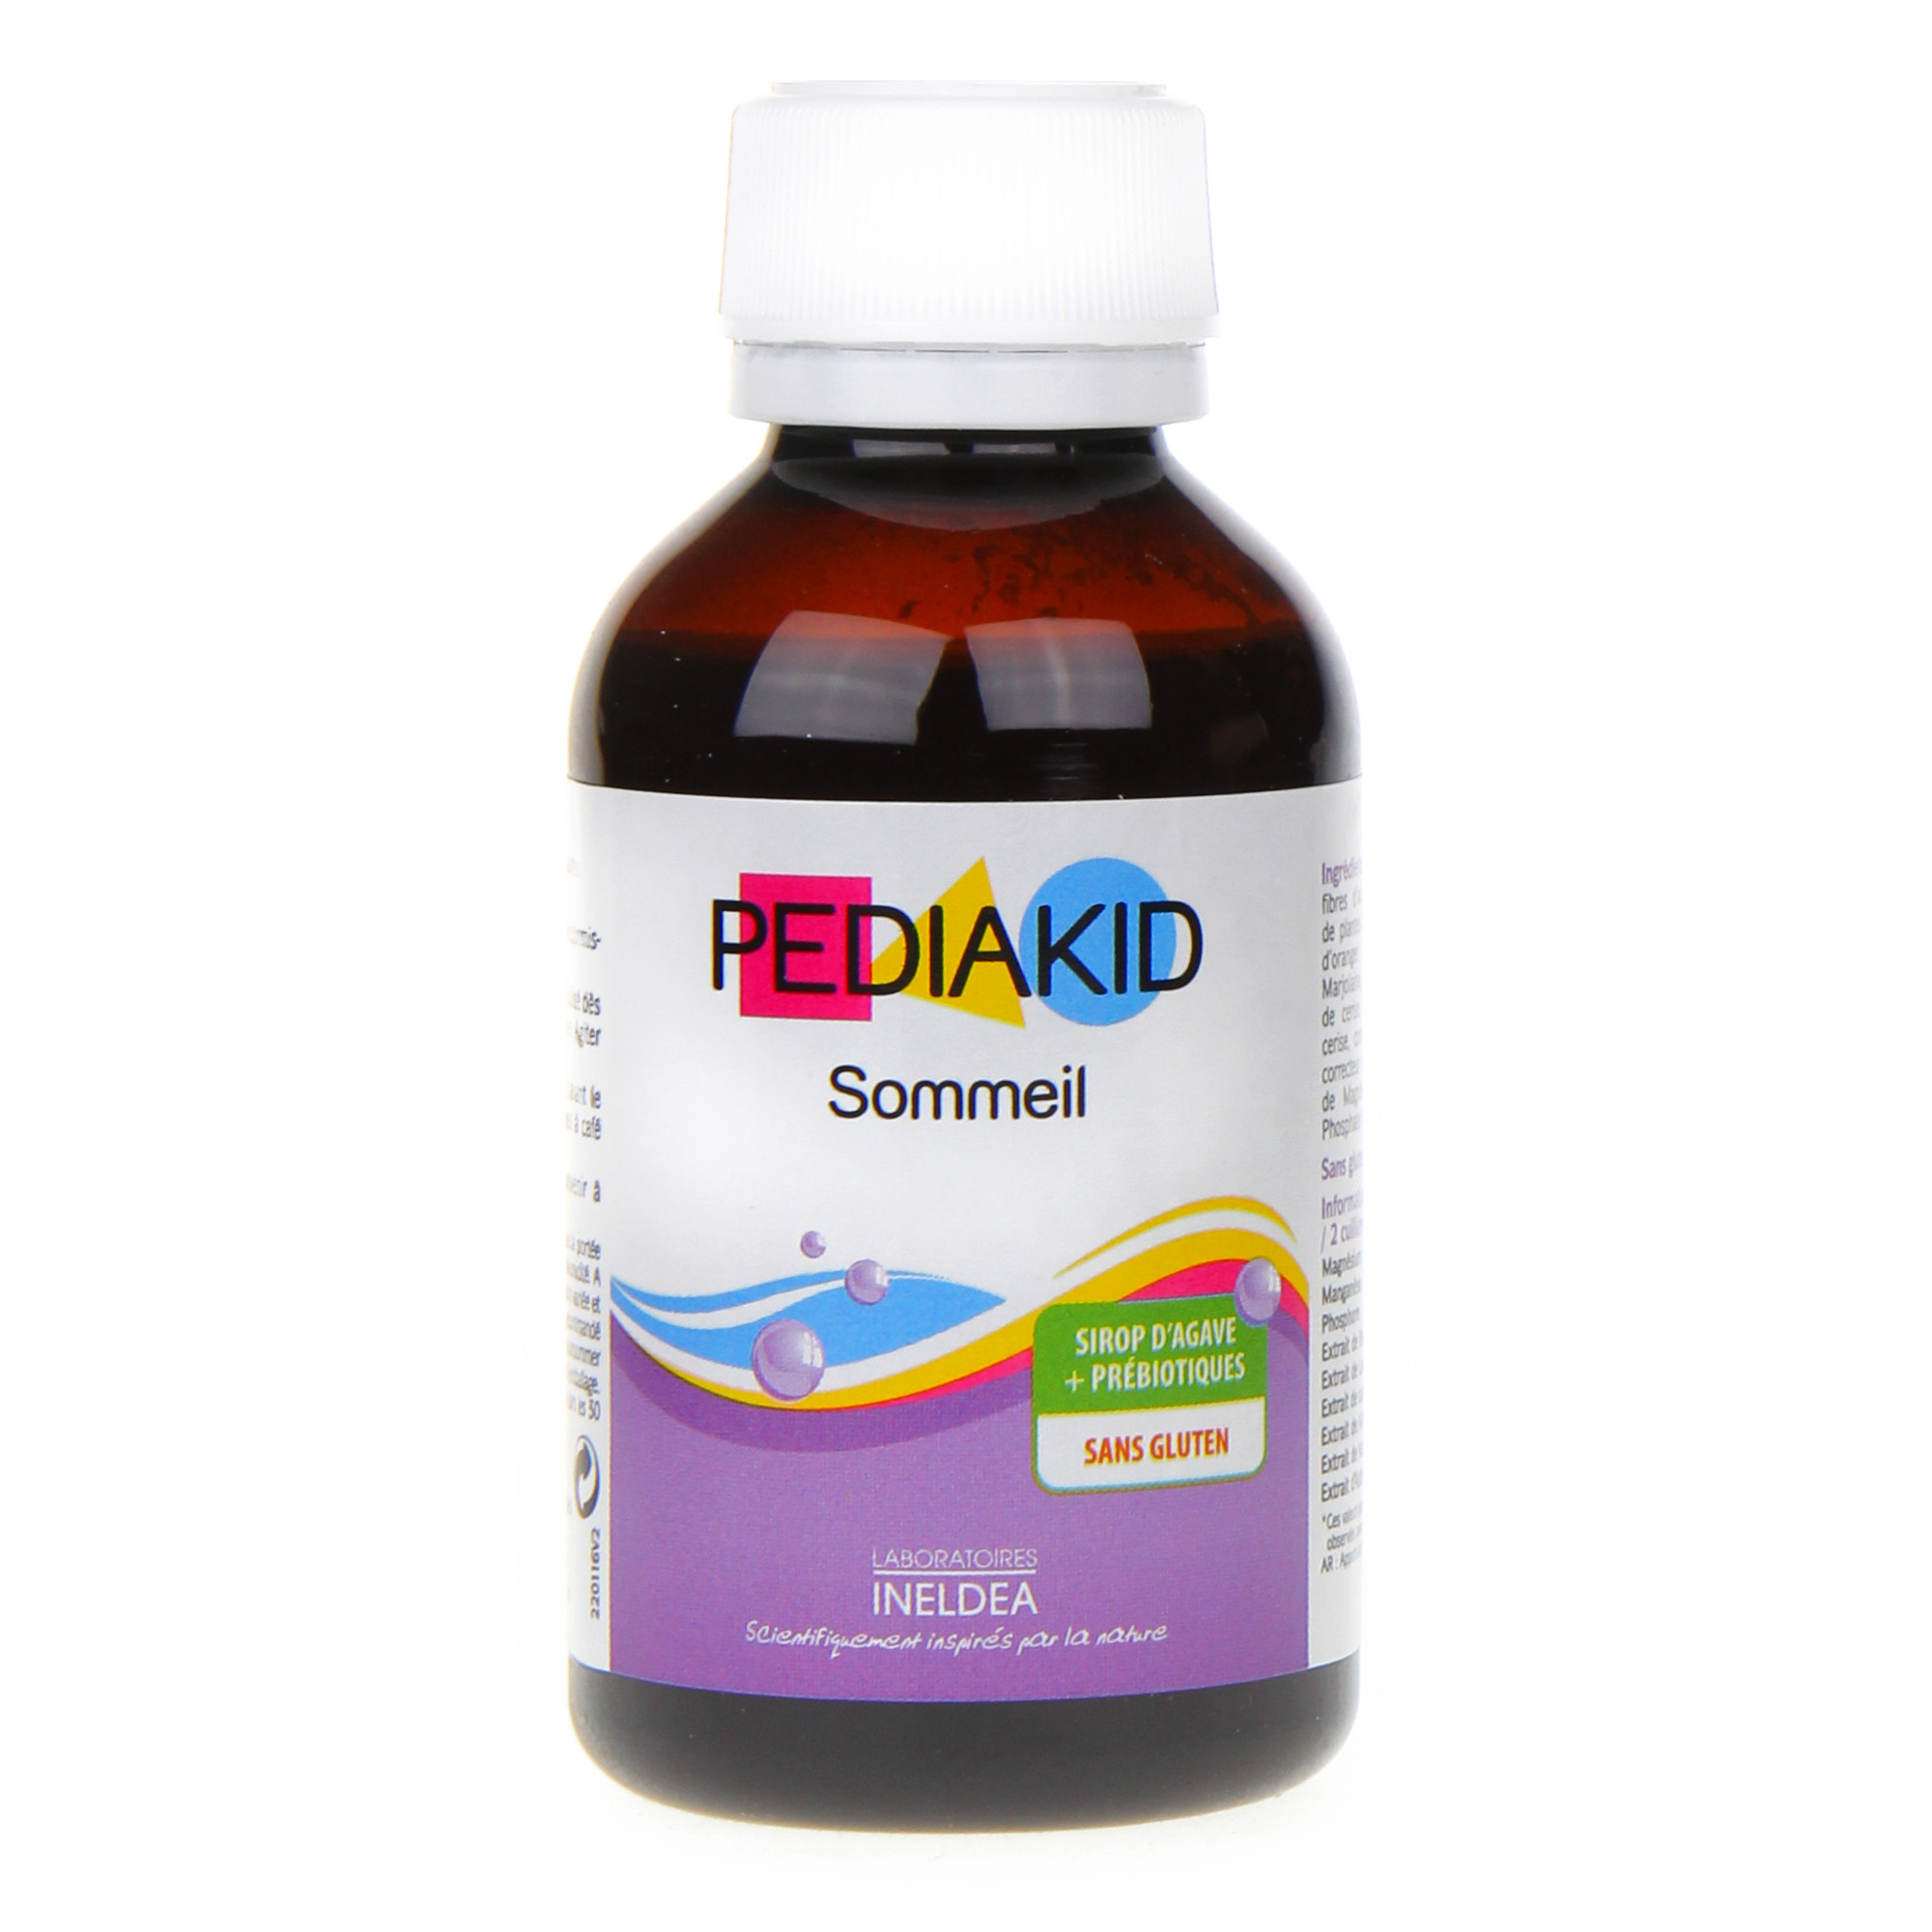 https://www.pharma360.fr/9391/pediakid-sommeil-125-ml.jpg